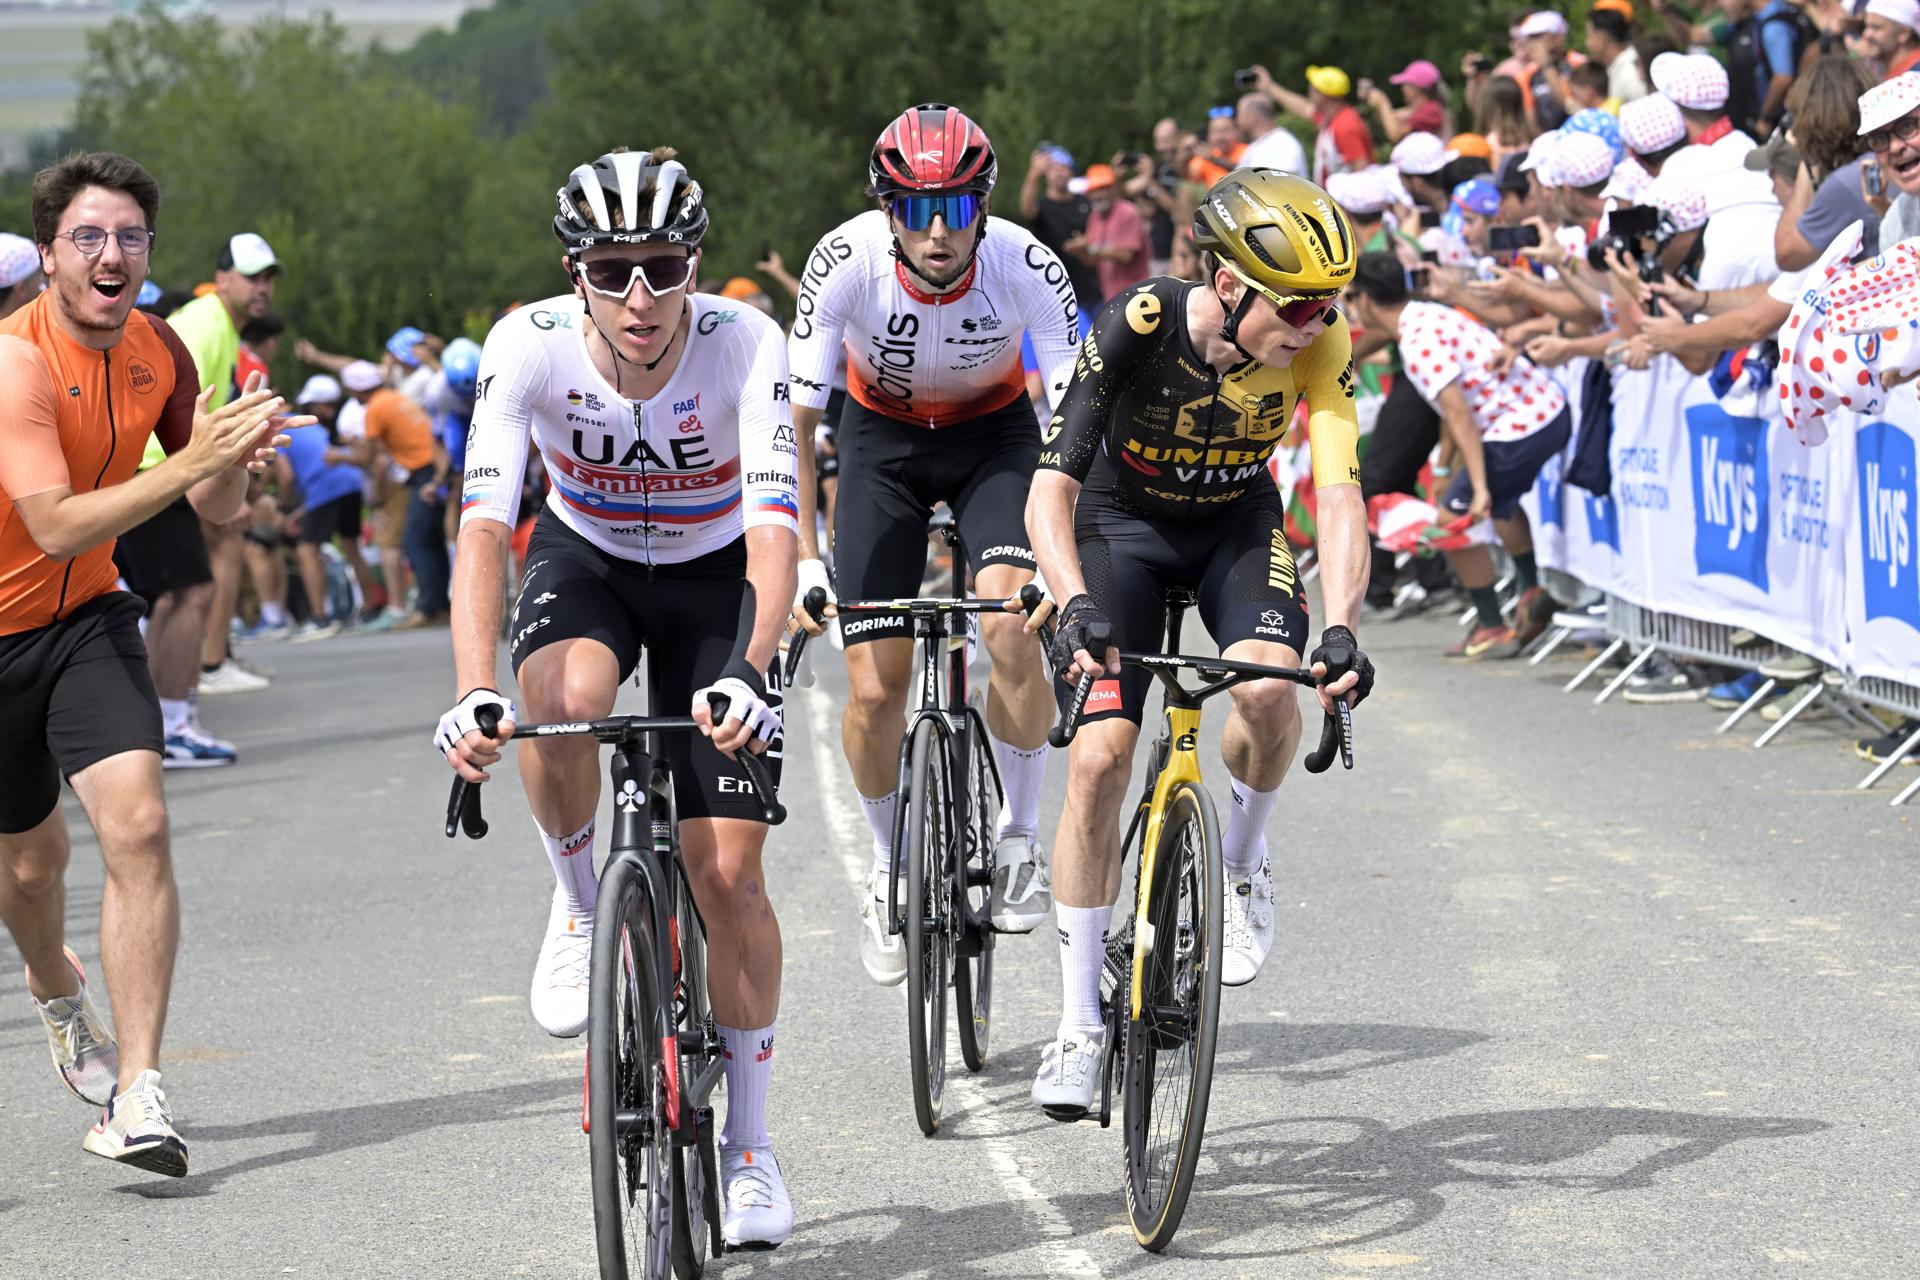 Alerta en el Tour de Francia: intento de boicot con chinchetas y temor a la revuelta por Nahel